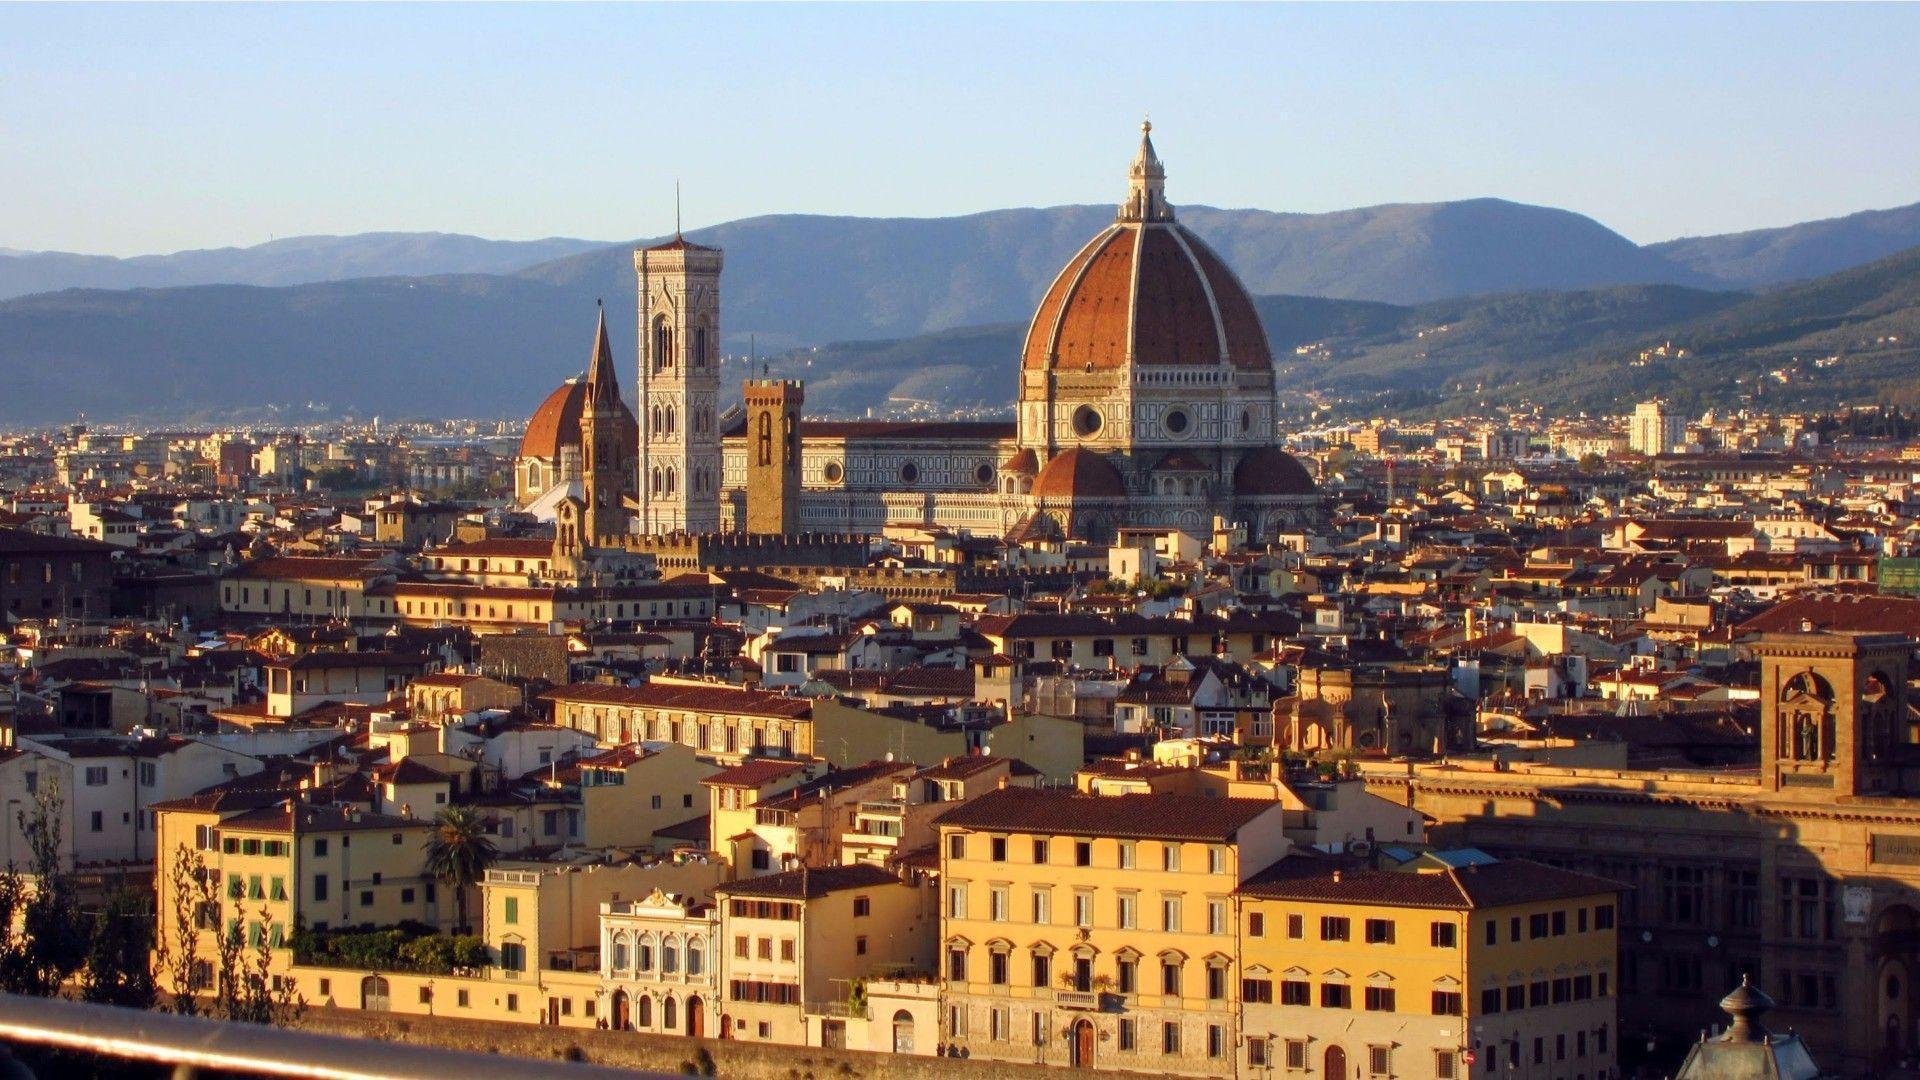 Free Download Florence Italy 4K Wallpaper. Free 4K Wallpaper